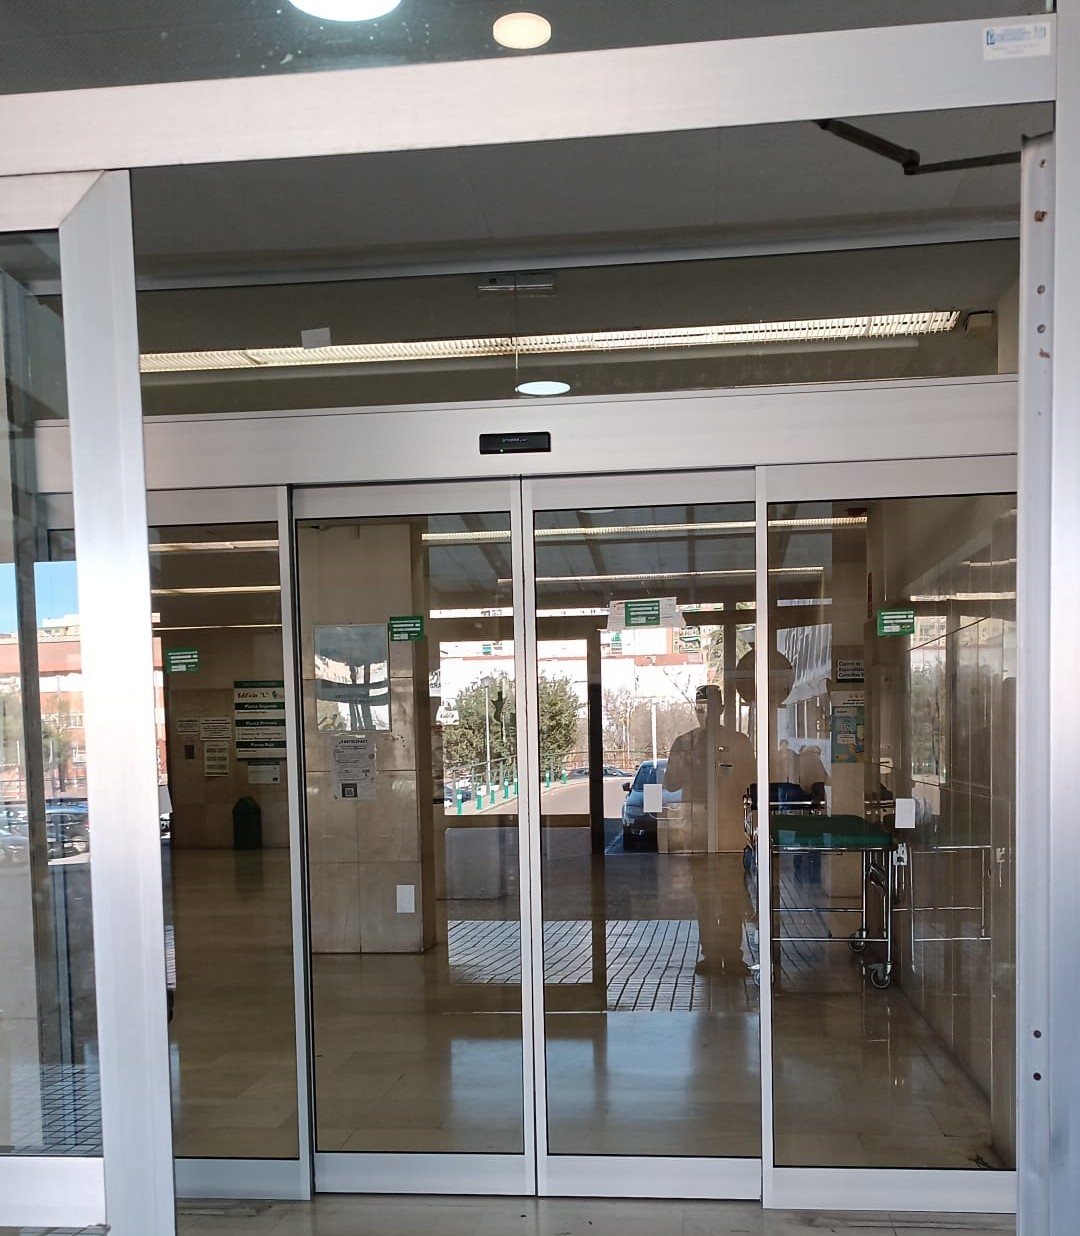 Image 2 of article El SES mejora la accesibilidad del Edificio L del complejo hospitalario Materno-Infantil de Badajoz